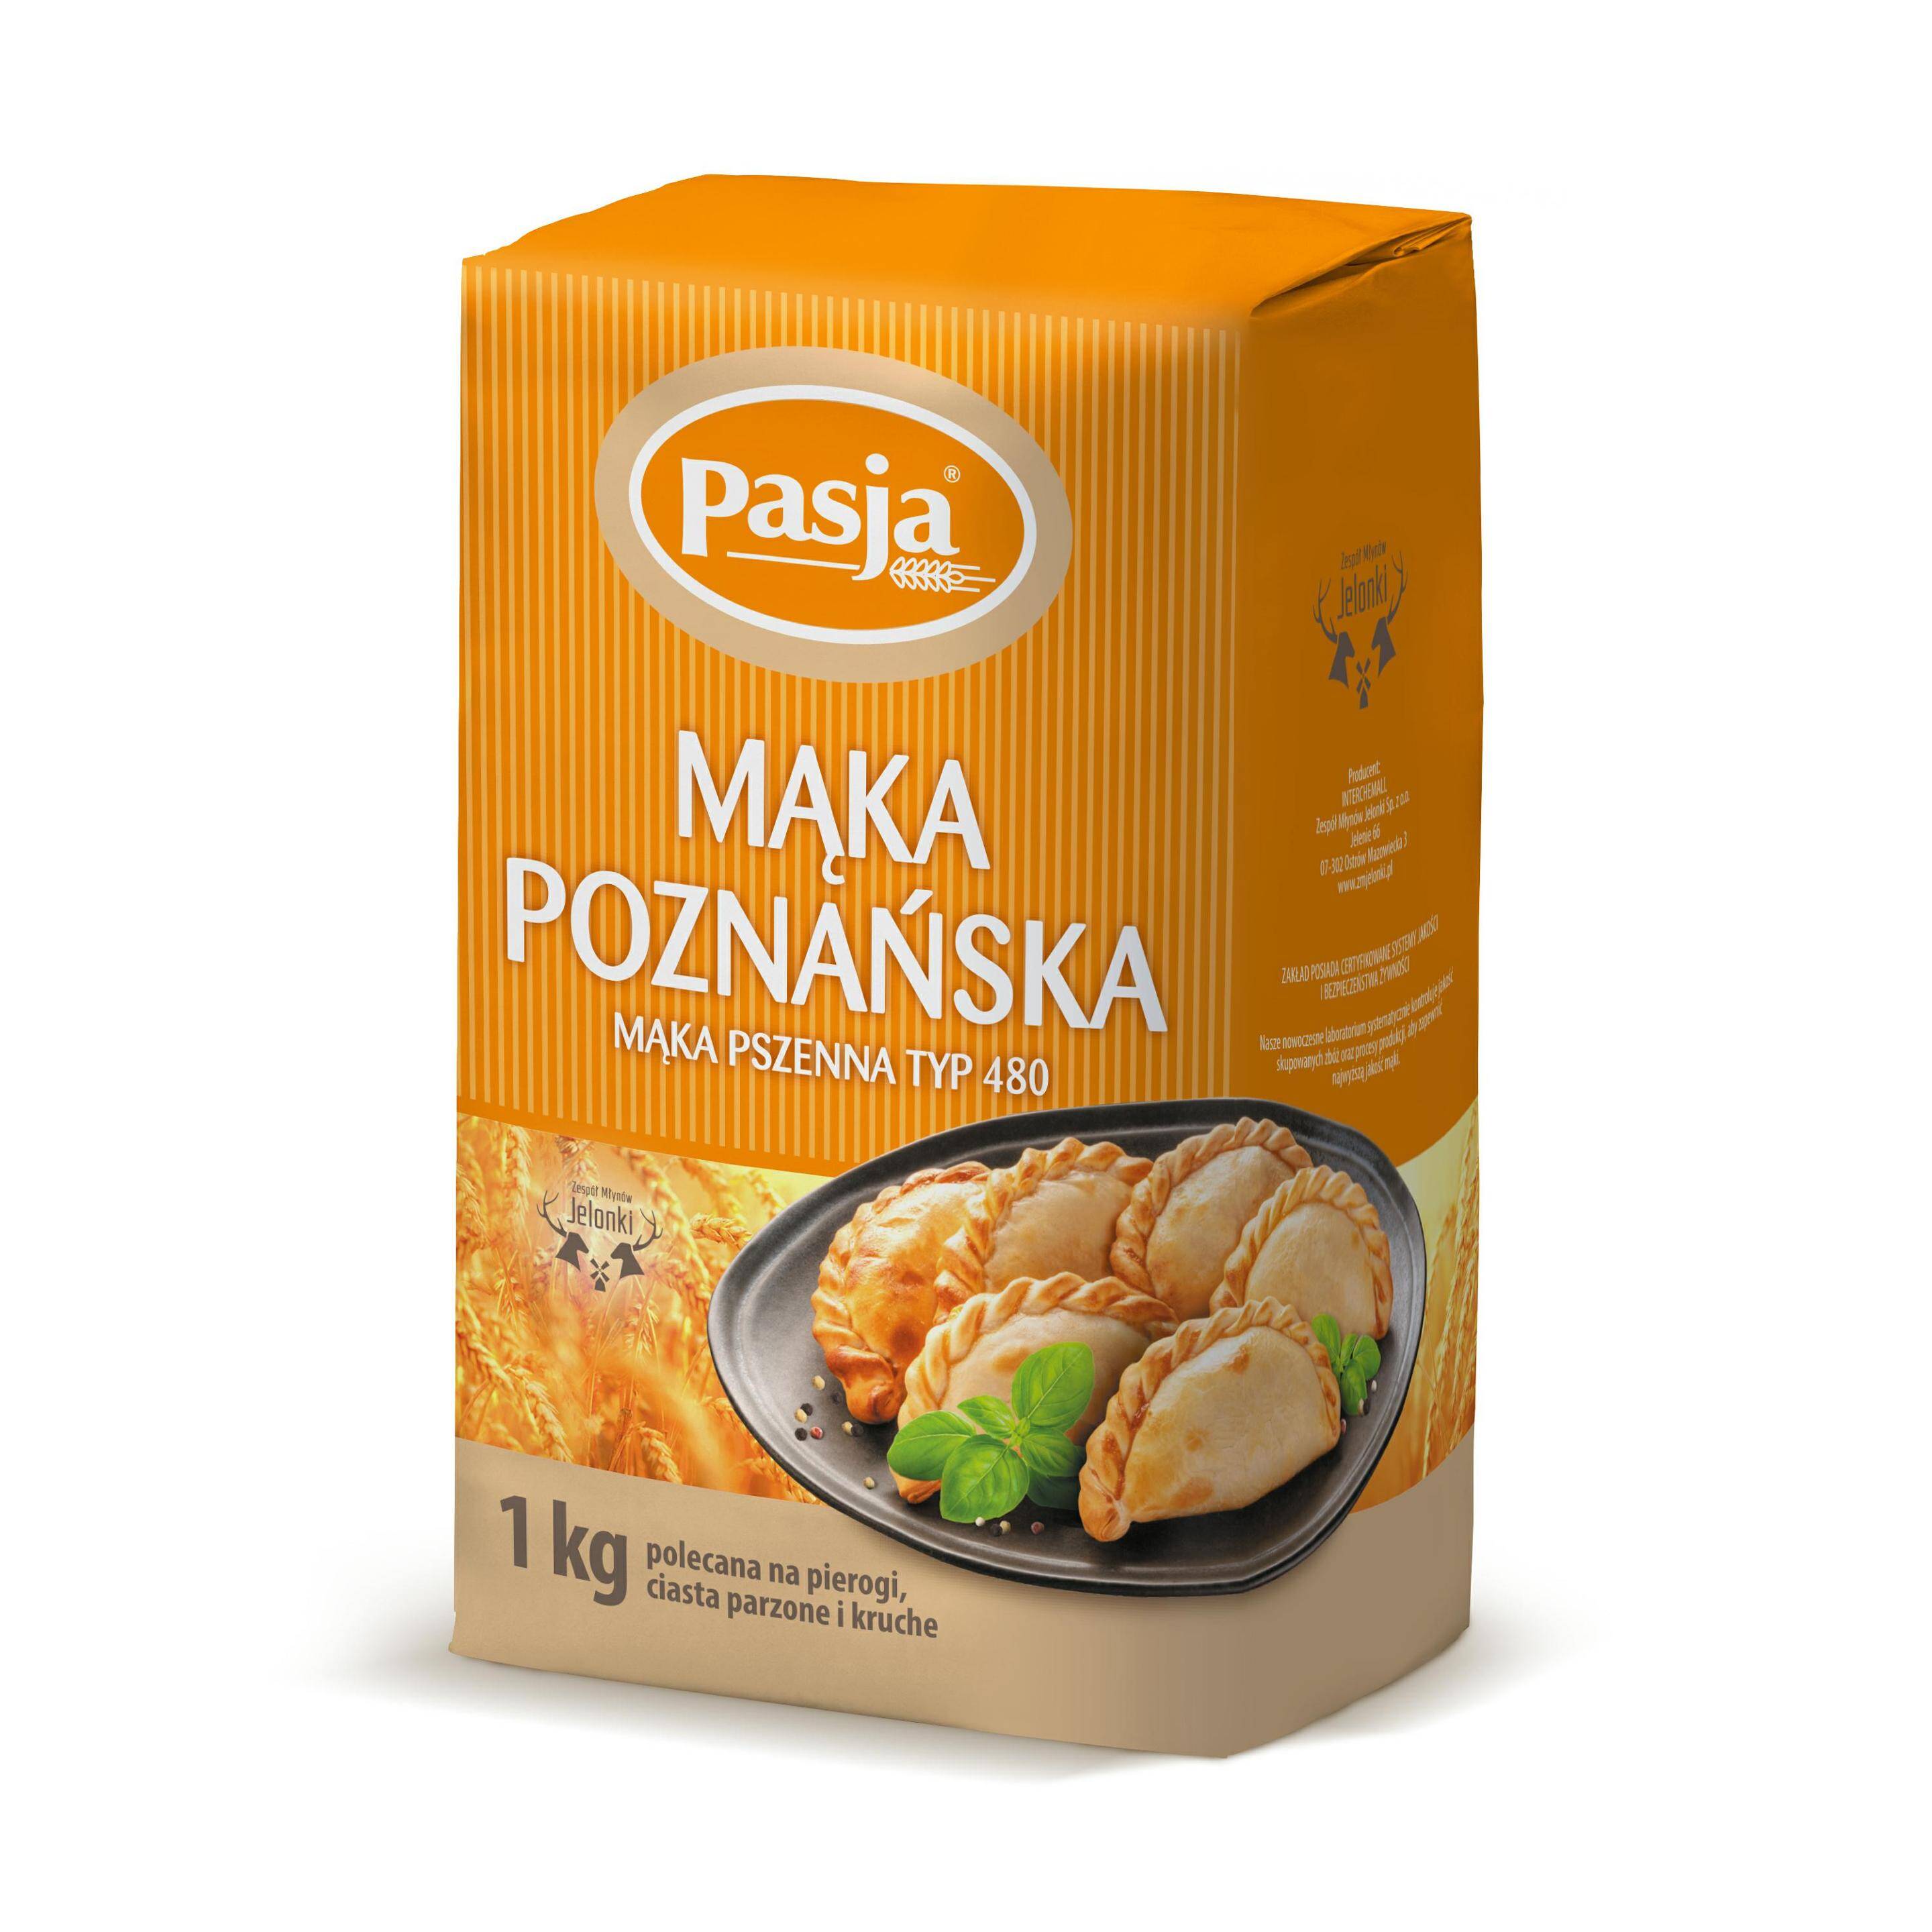 PASJA mąka poznańska 1kg* 10